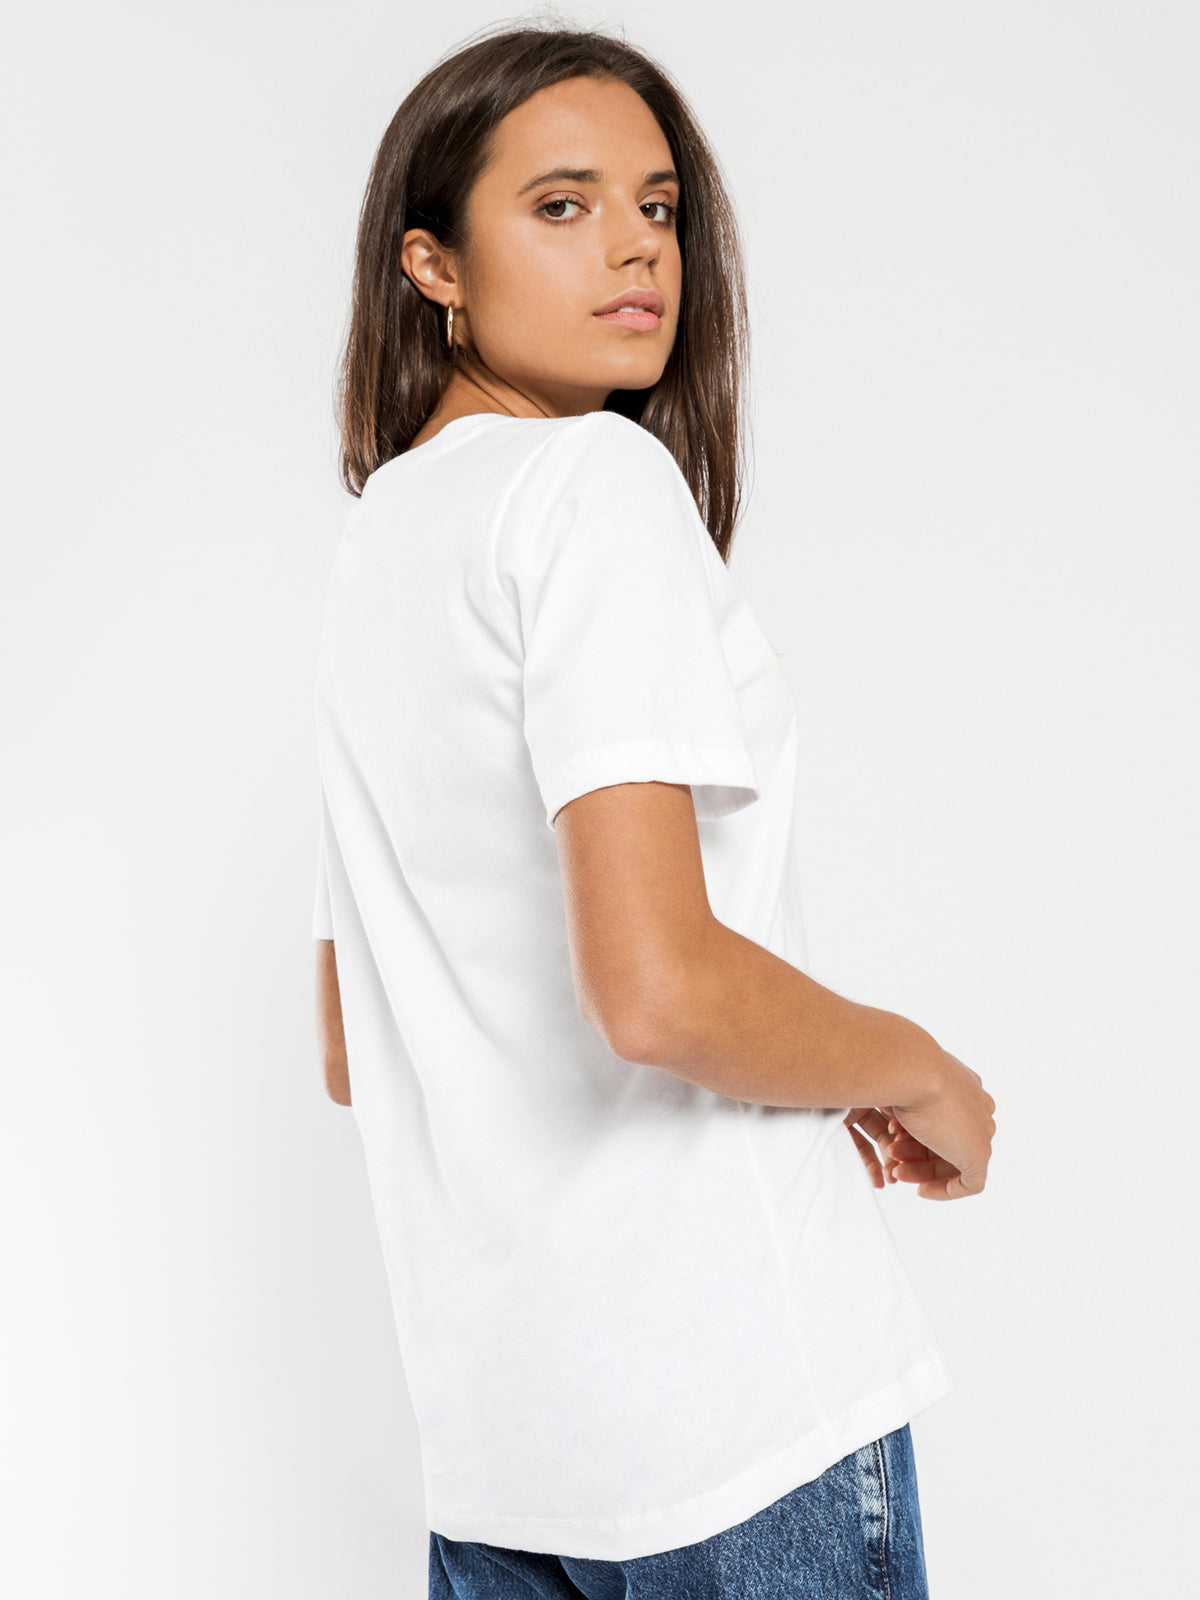 Neon Collegiate T-Shirt in Classic White